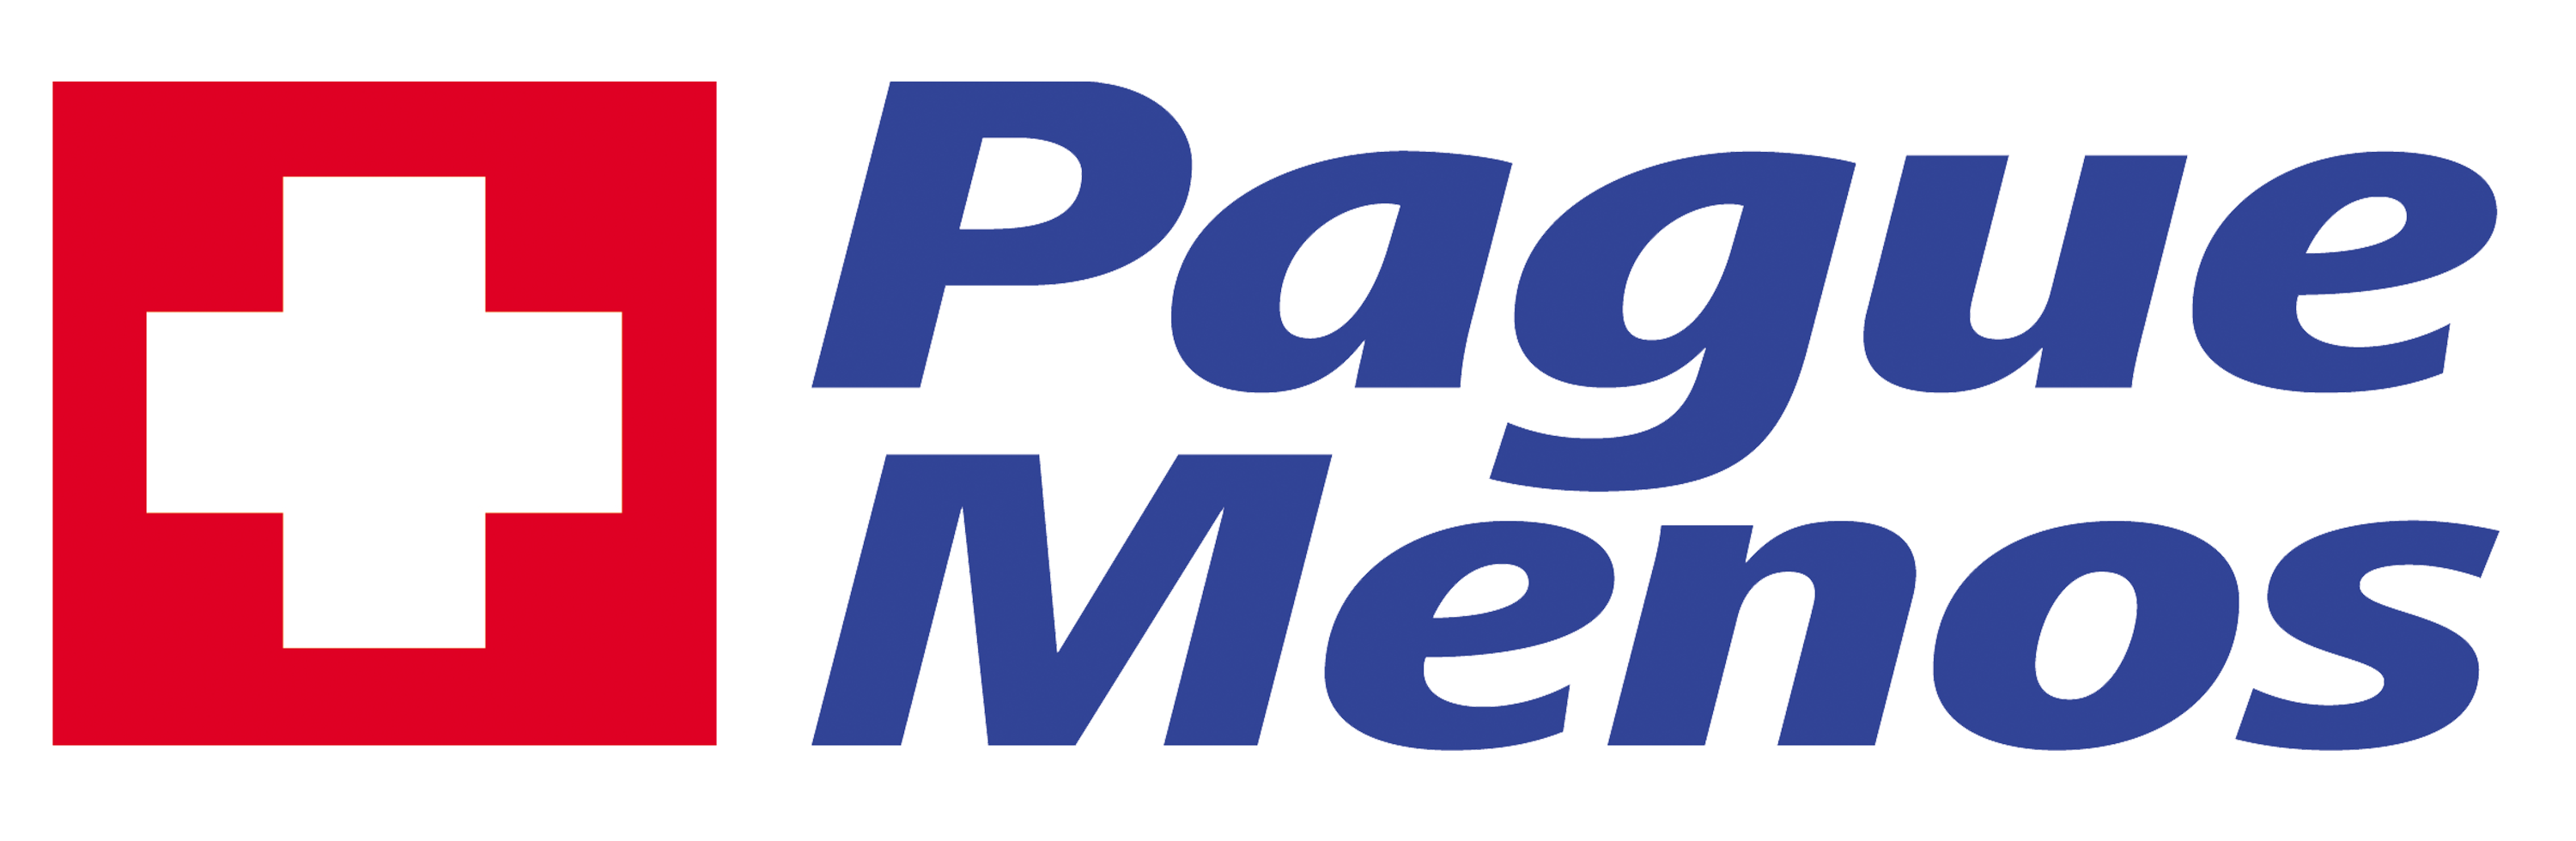 Farmacia Pague Menos - Ponta Porã - MS